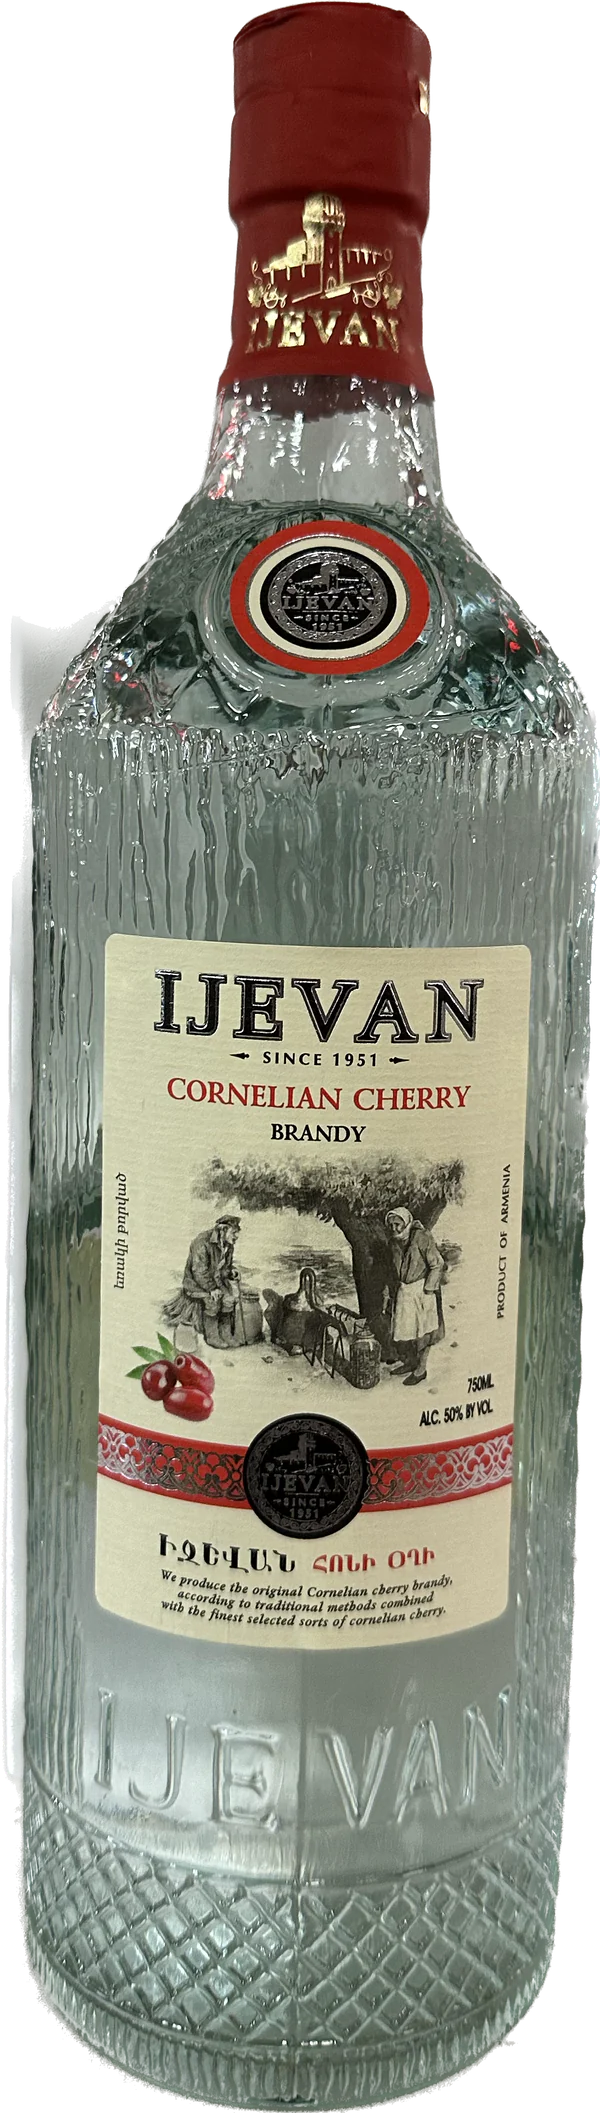 Ijevan Cornellian Cherry Brandy